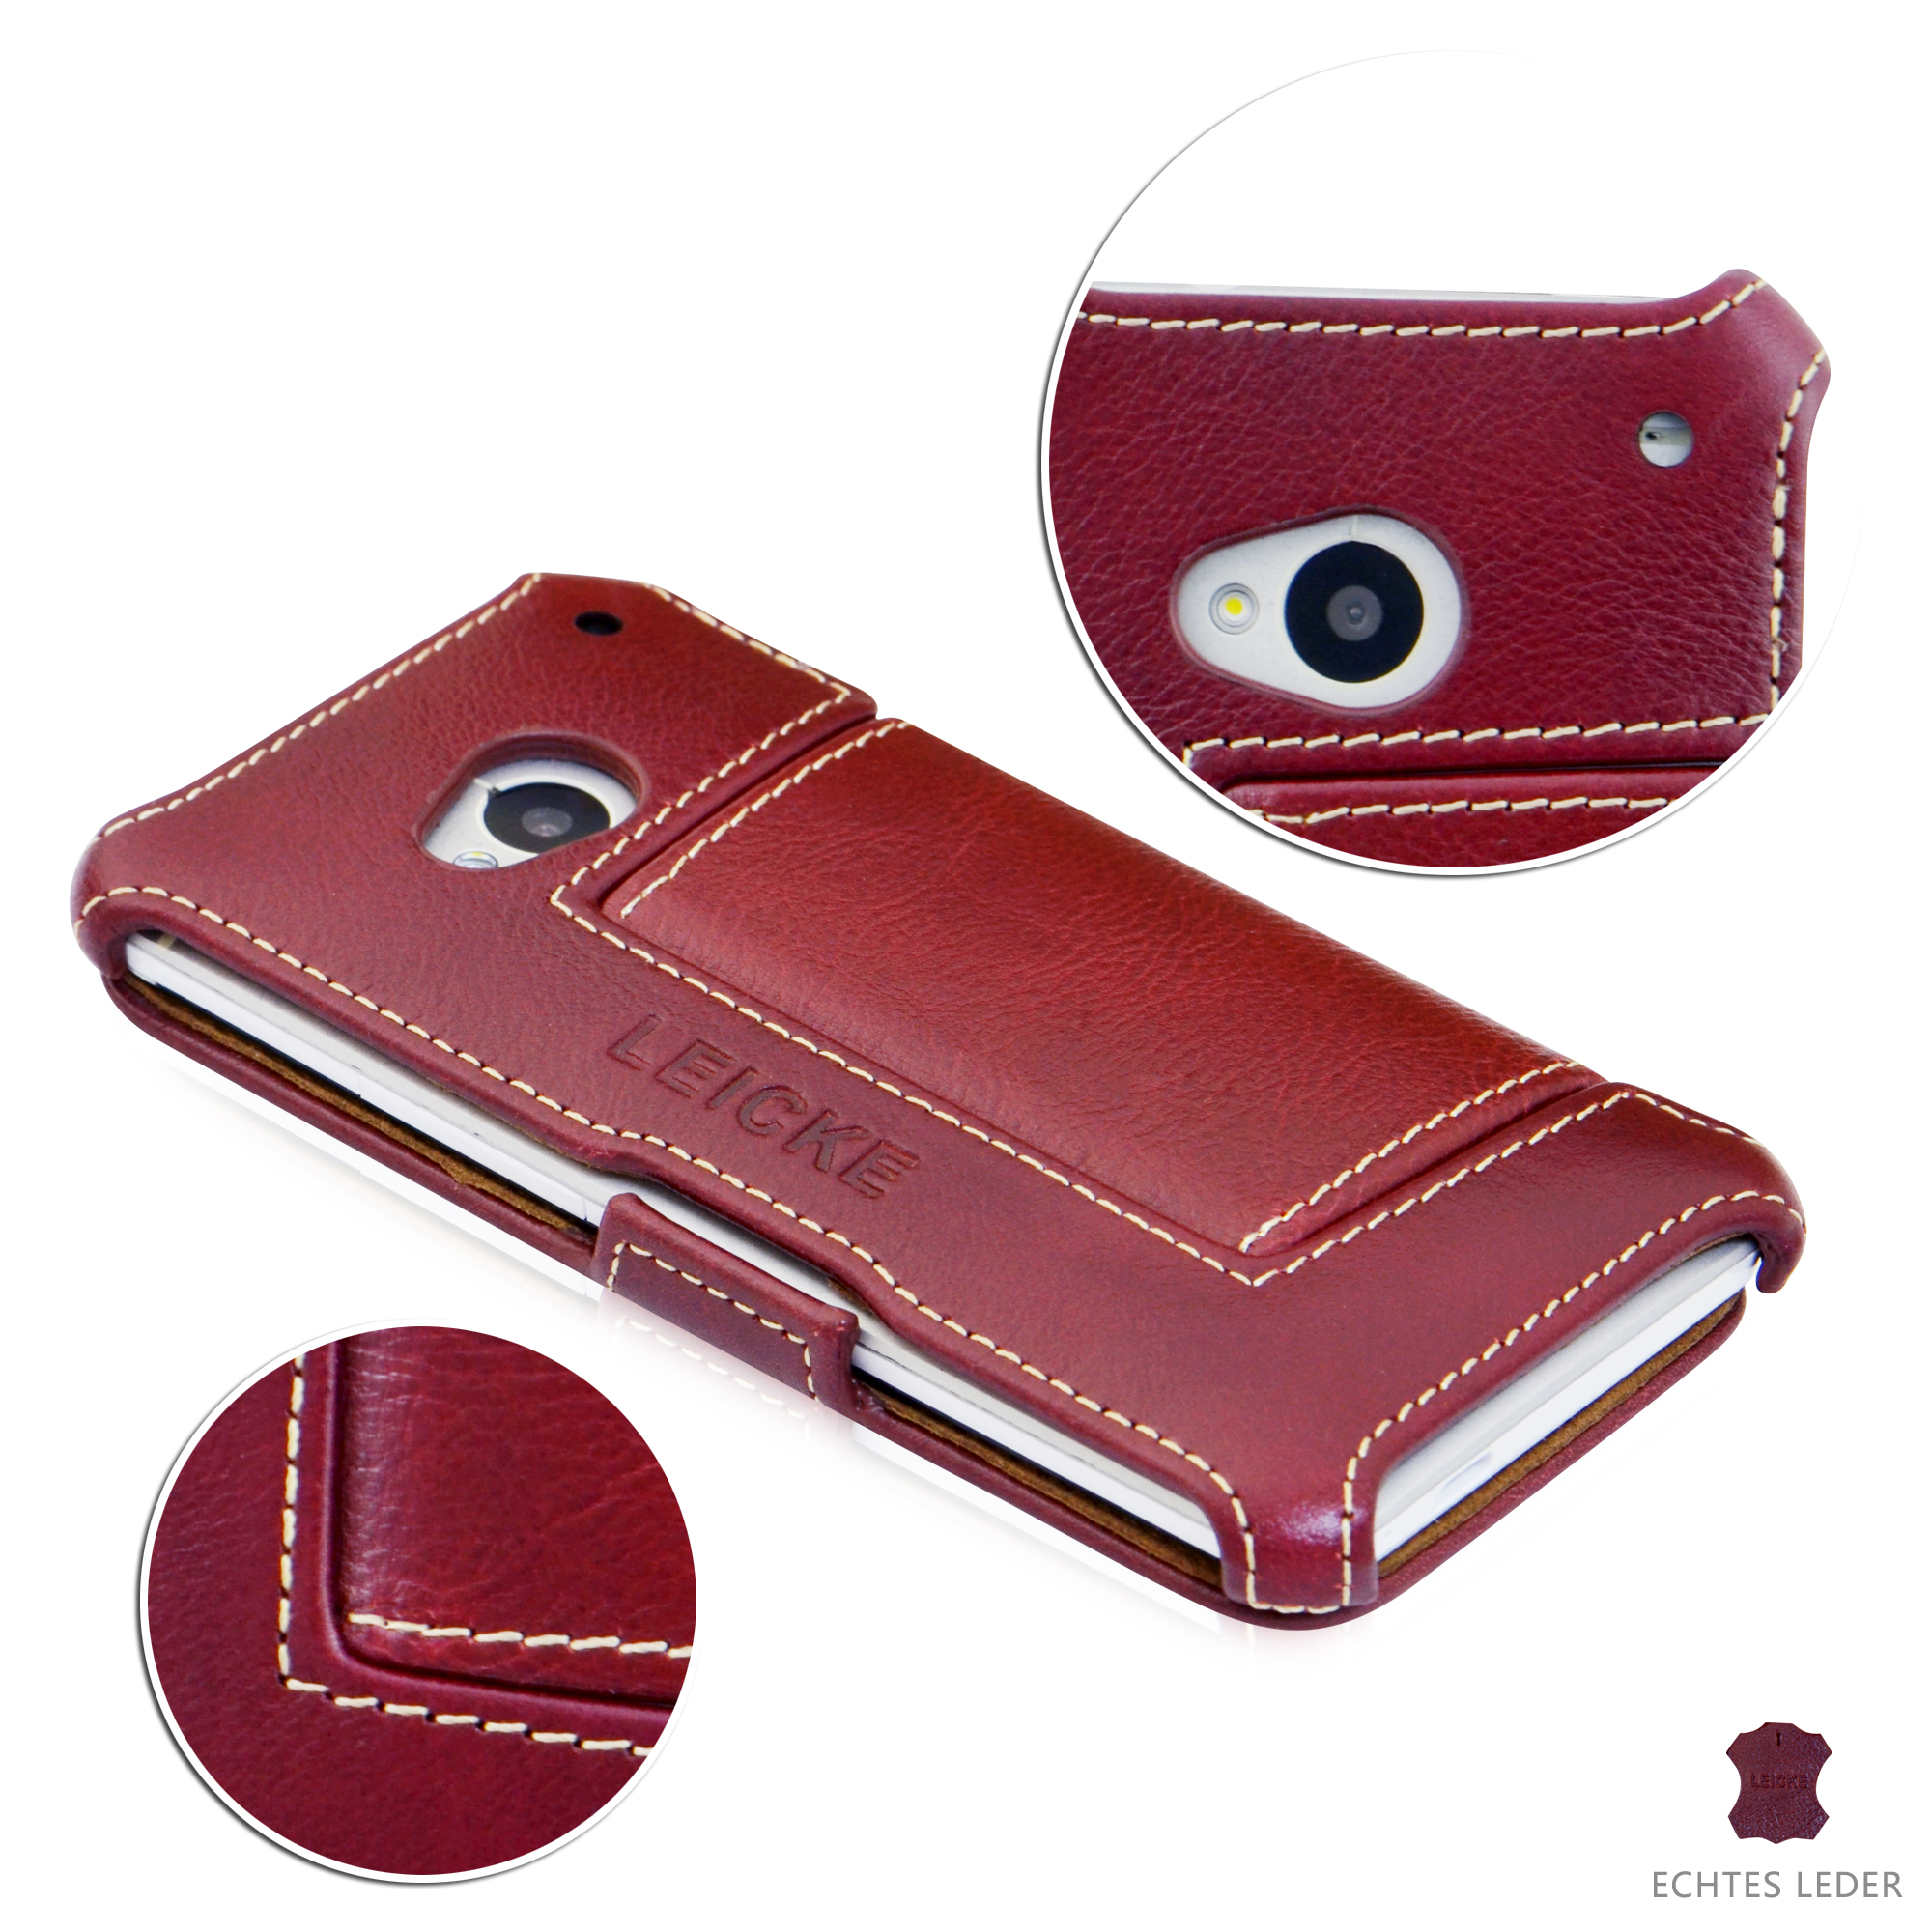 verkenner Bezighouden Wetland Leicke | MANNA UltraSlim Flip Case for HTC One M7 | Genuine Leather,